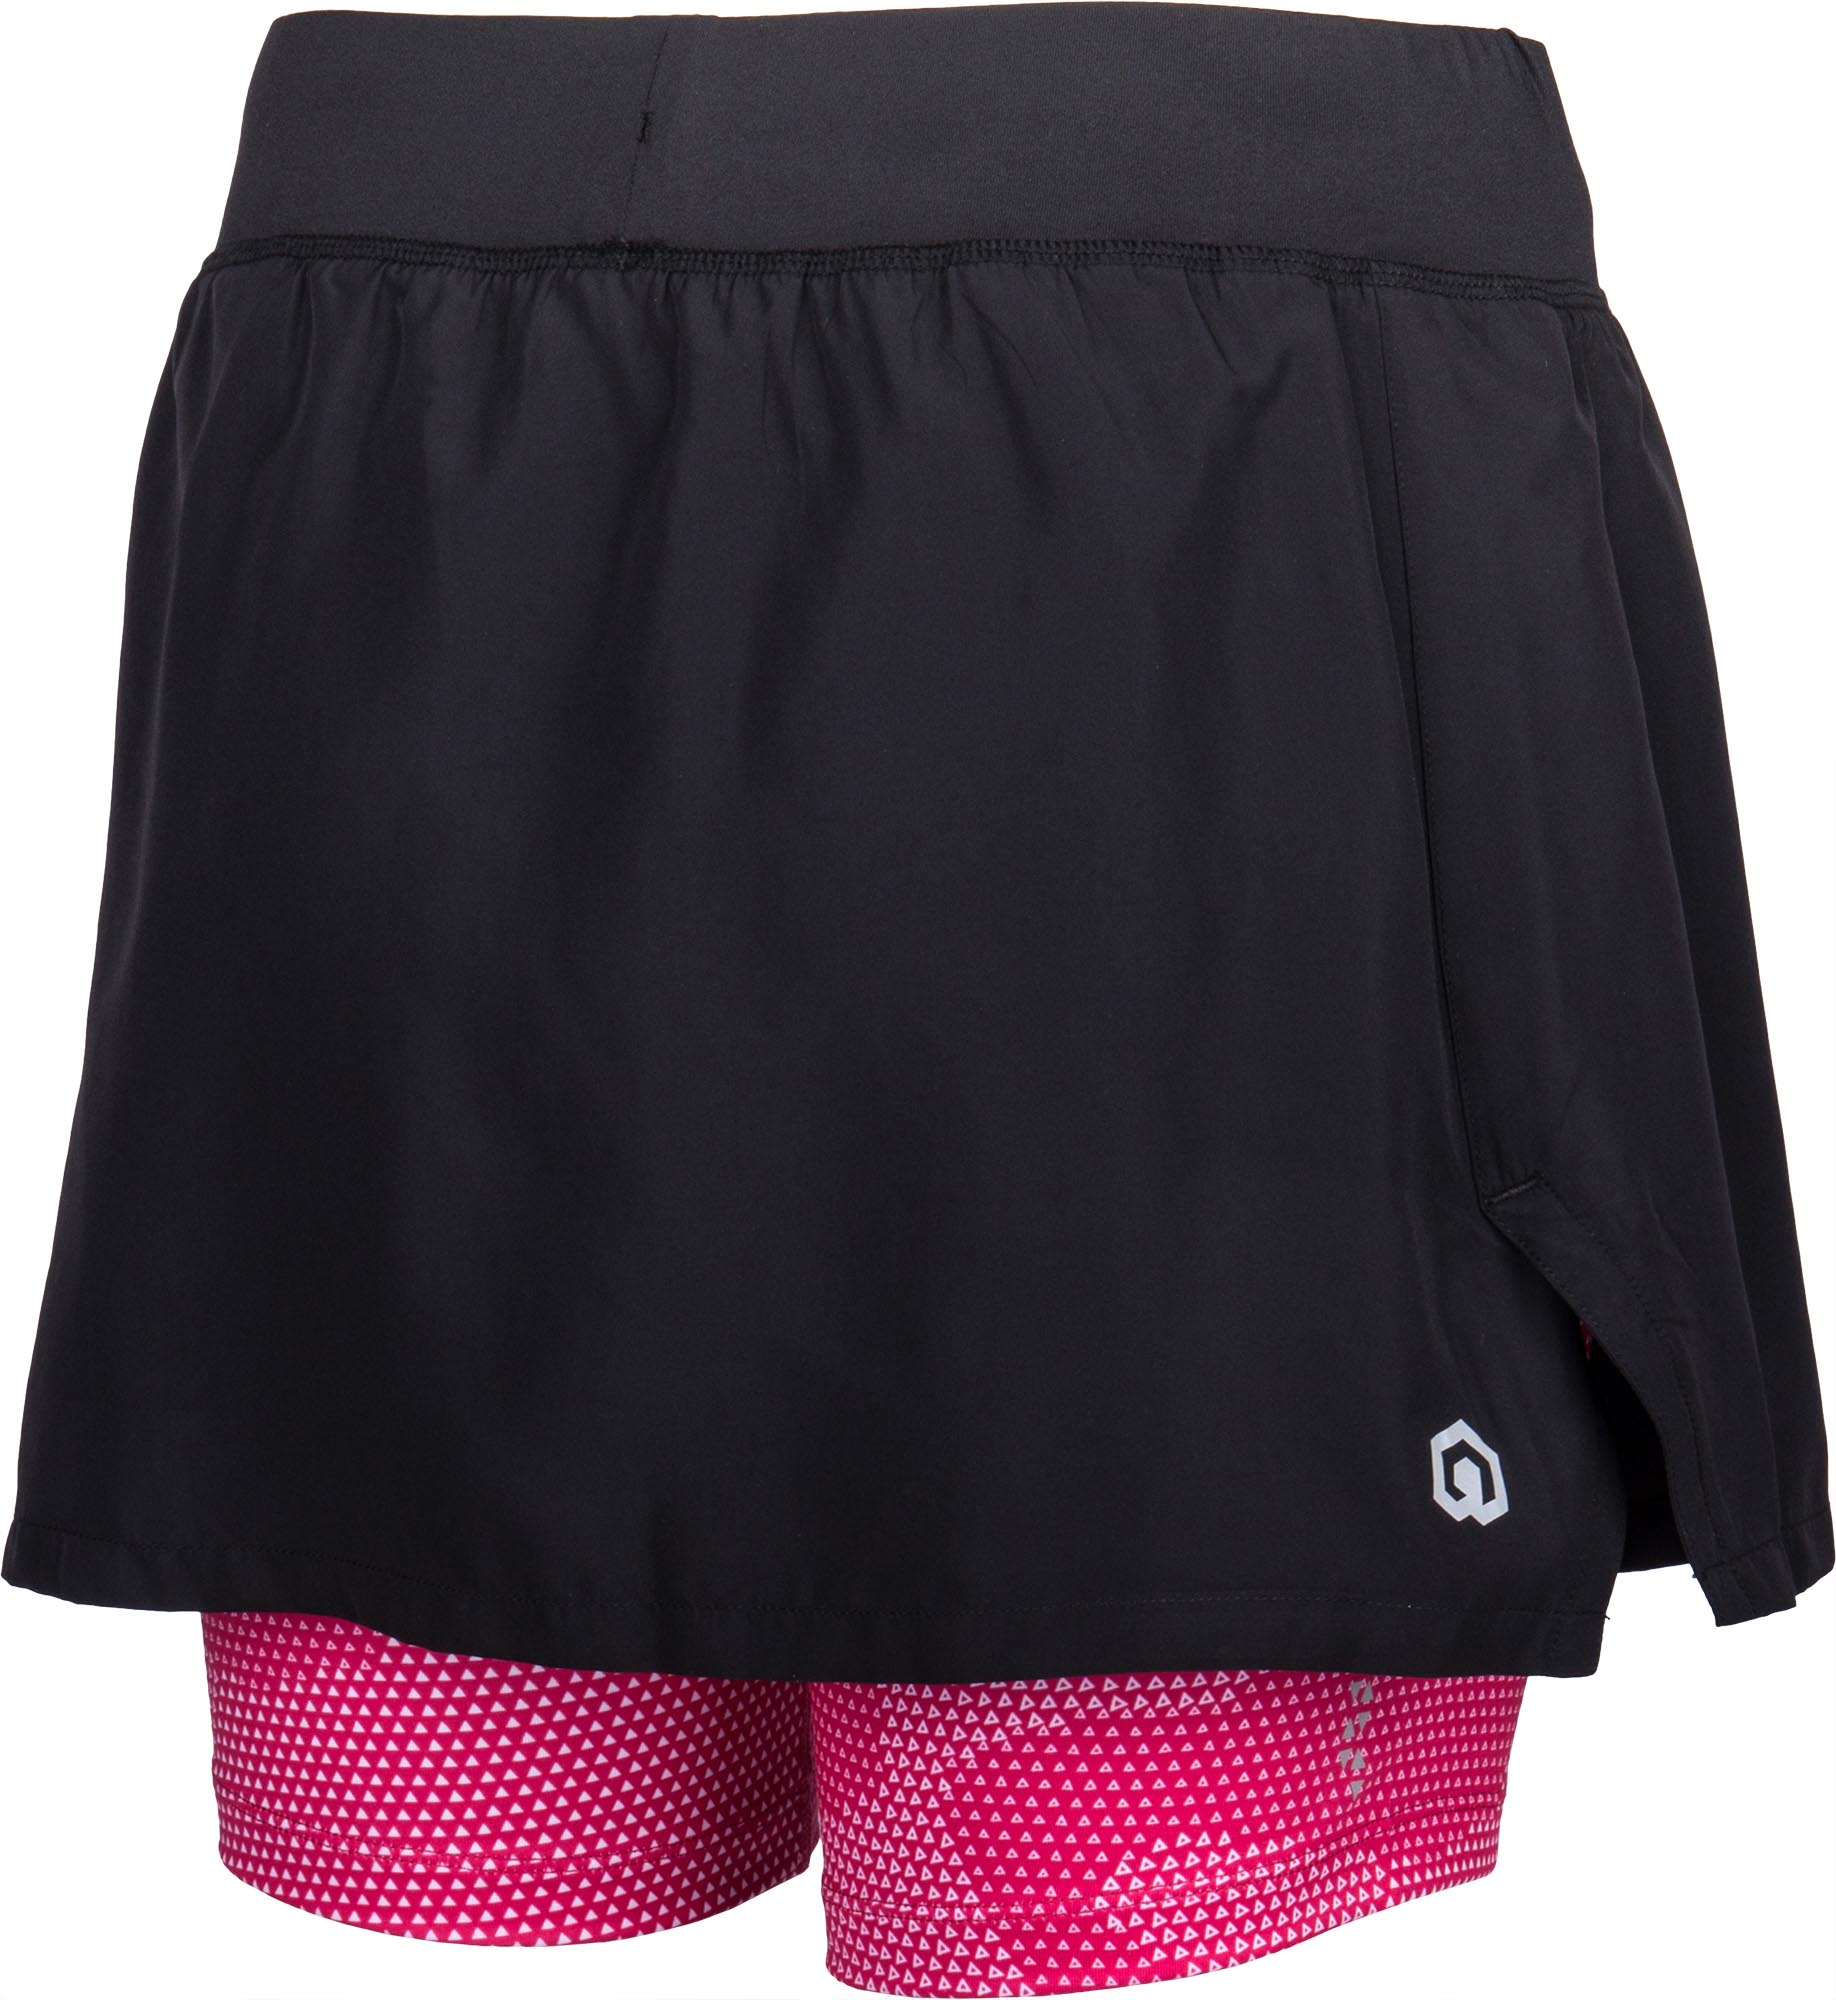 Women's running shorts with skirt